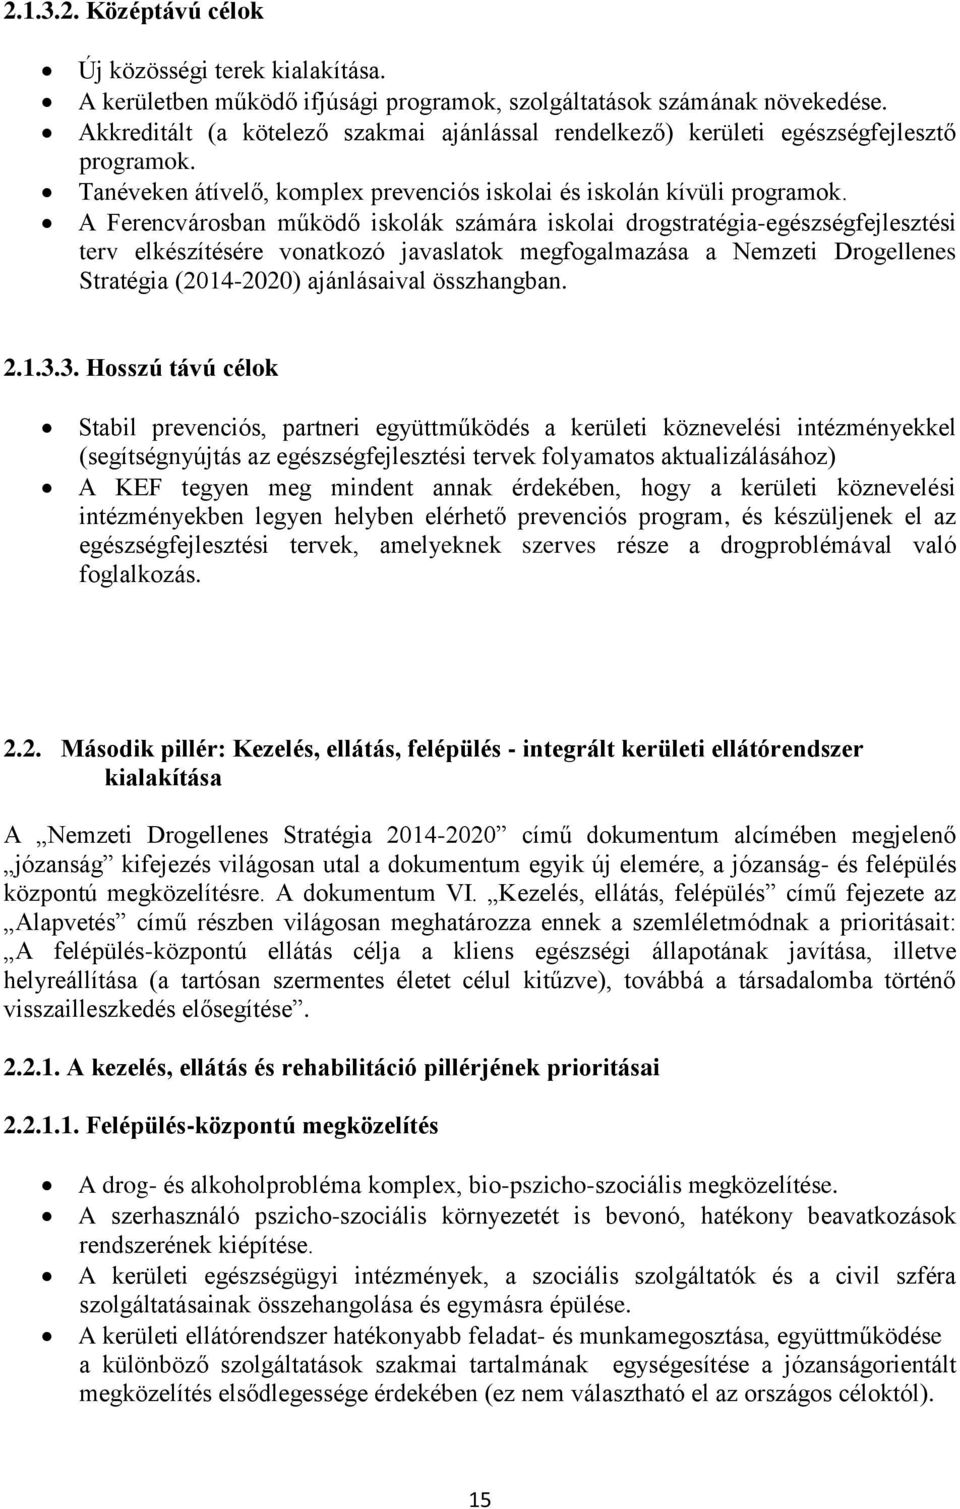 A Ferencvárosban működő iskolák számára iskolai drogstratégia-egészségfejlesztési terv elkészítésére vonatkozó javaslatok megfogalmazása a Nemzeti Drogellenes Stratégia (2014-2020) ajánlásaival